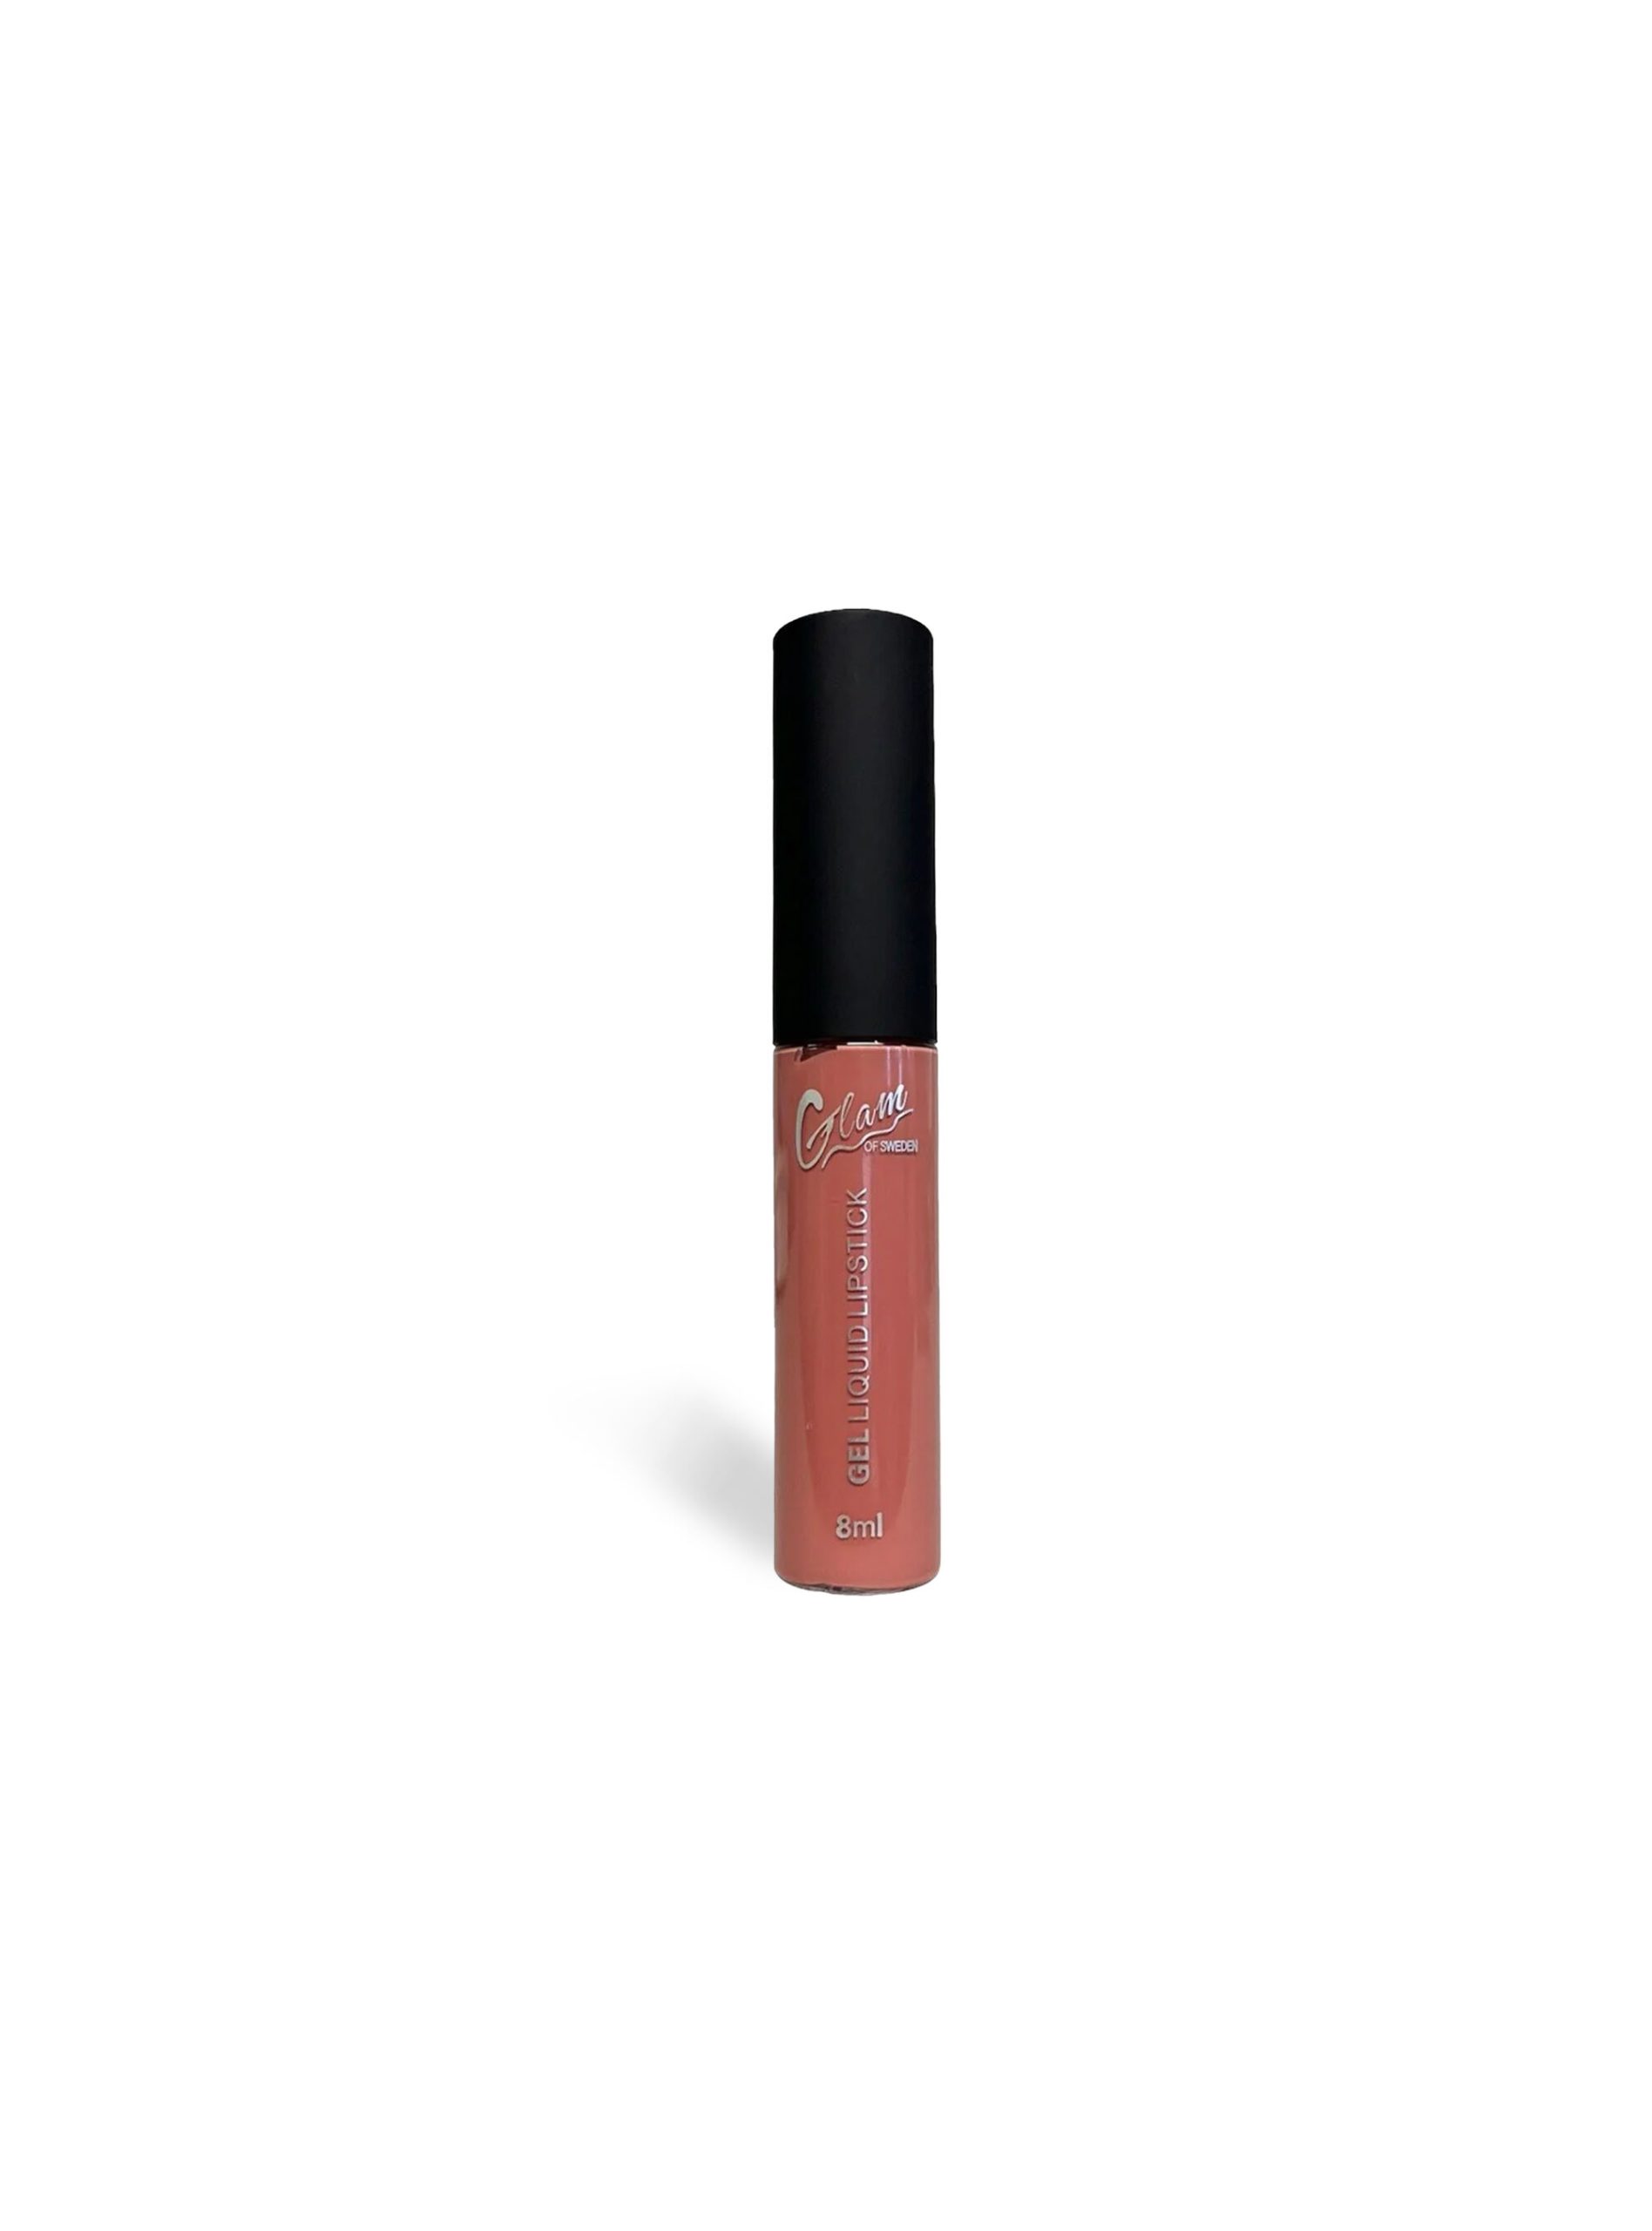 Liquid Lipstick Alcott Beauty Beschaffung C467 Dark Pink Frauen – 1